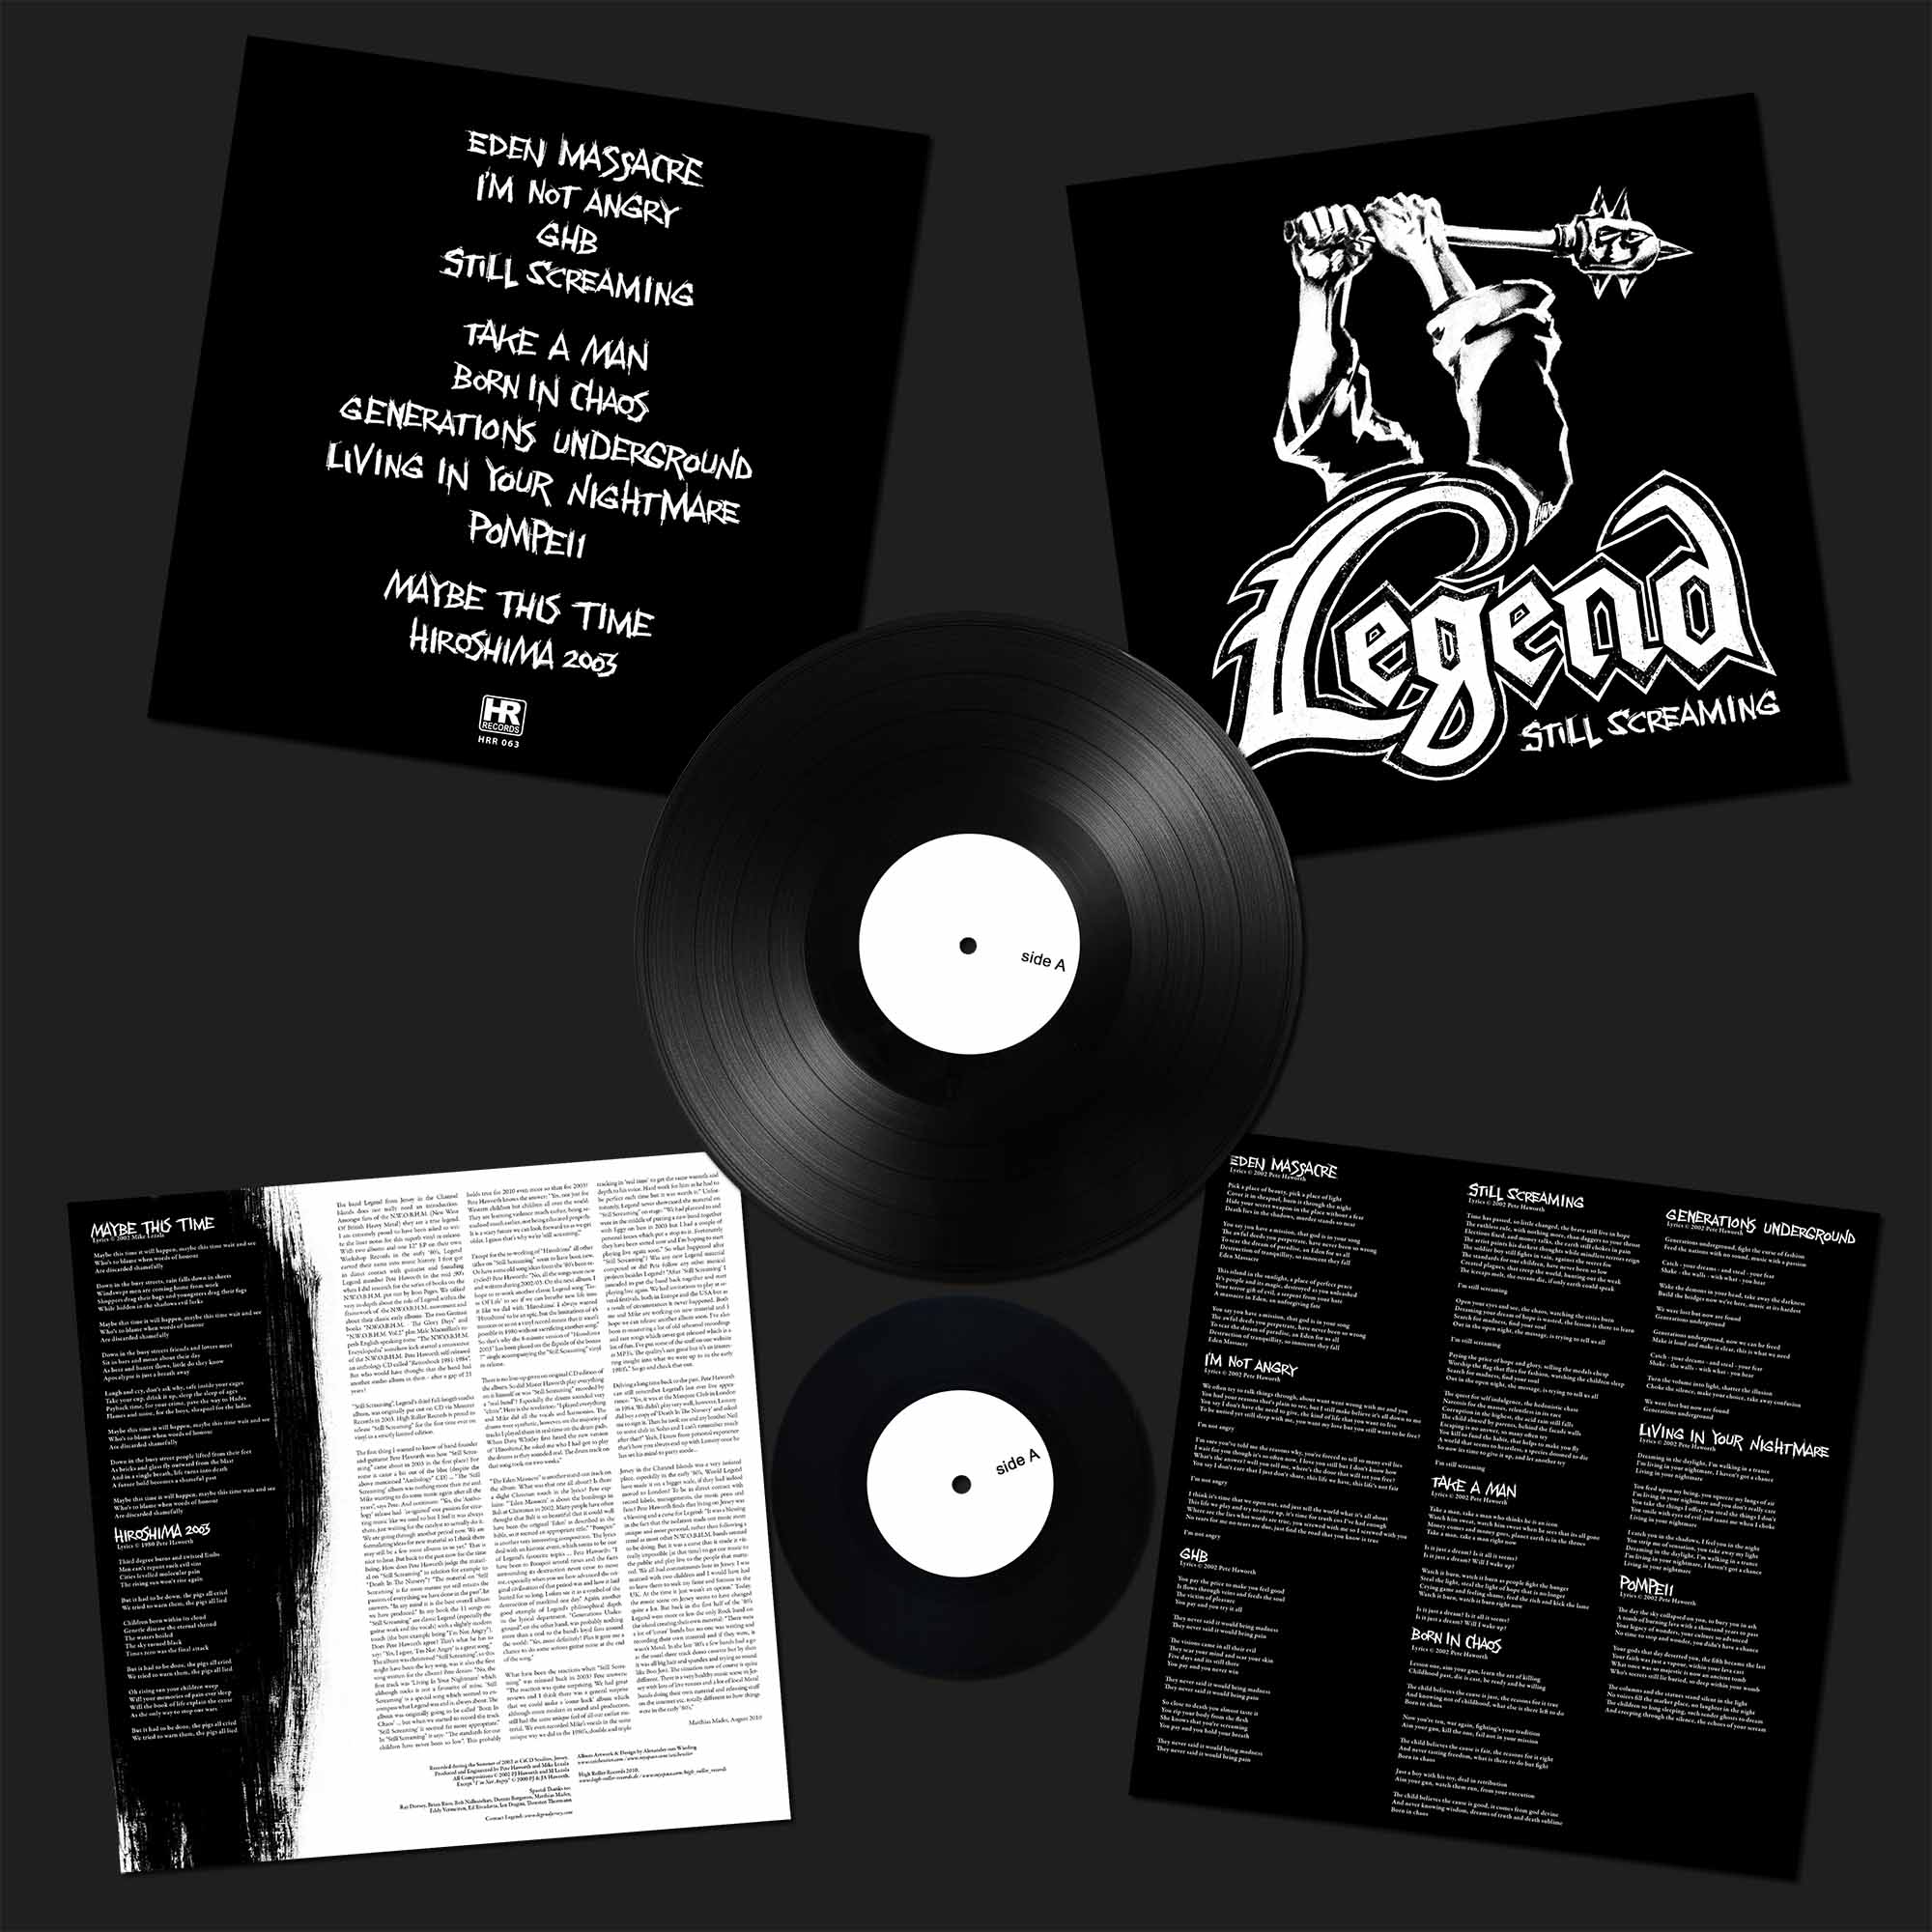 LEGEND - Still Screaming  LP